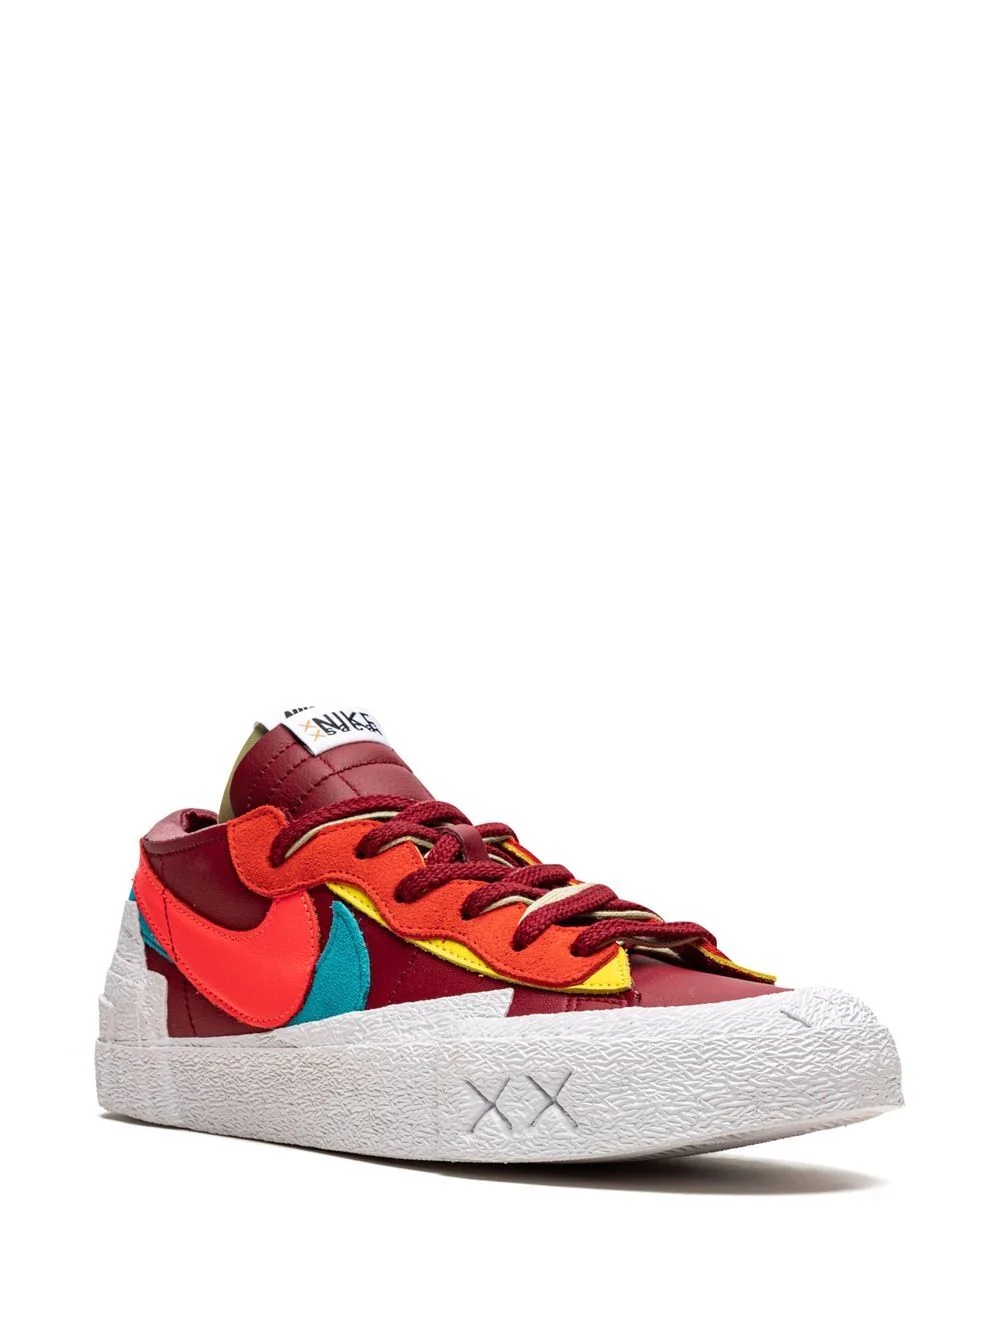 x KAWS x sacai Blazer Low "Red" sneakers - 2